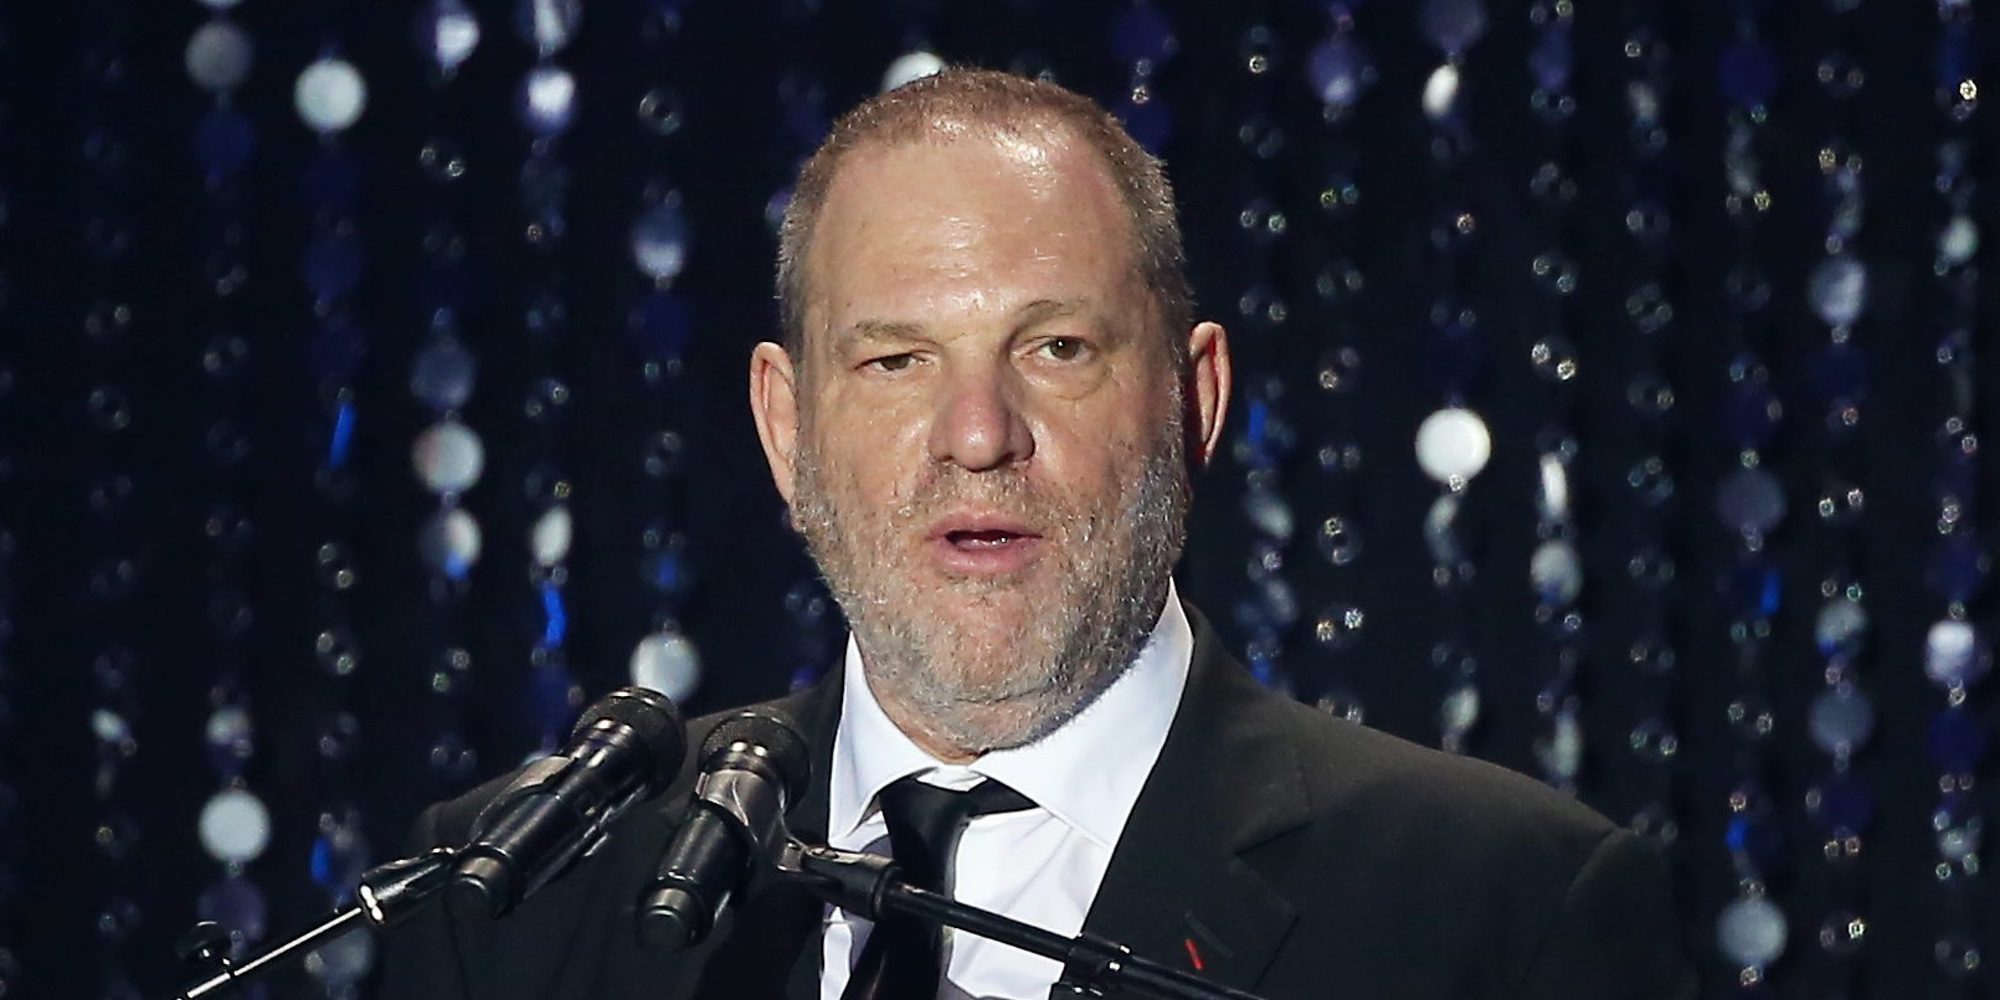 Una desconocida actriz demanda legalmente a Harvey Weinstein por presunta violación